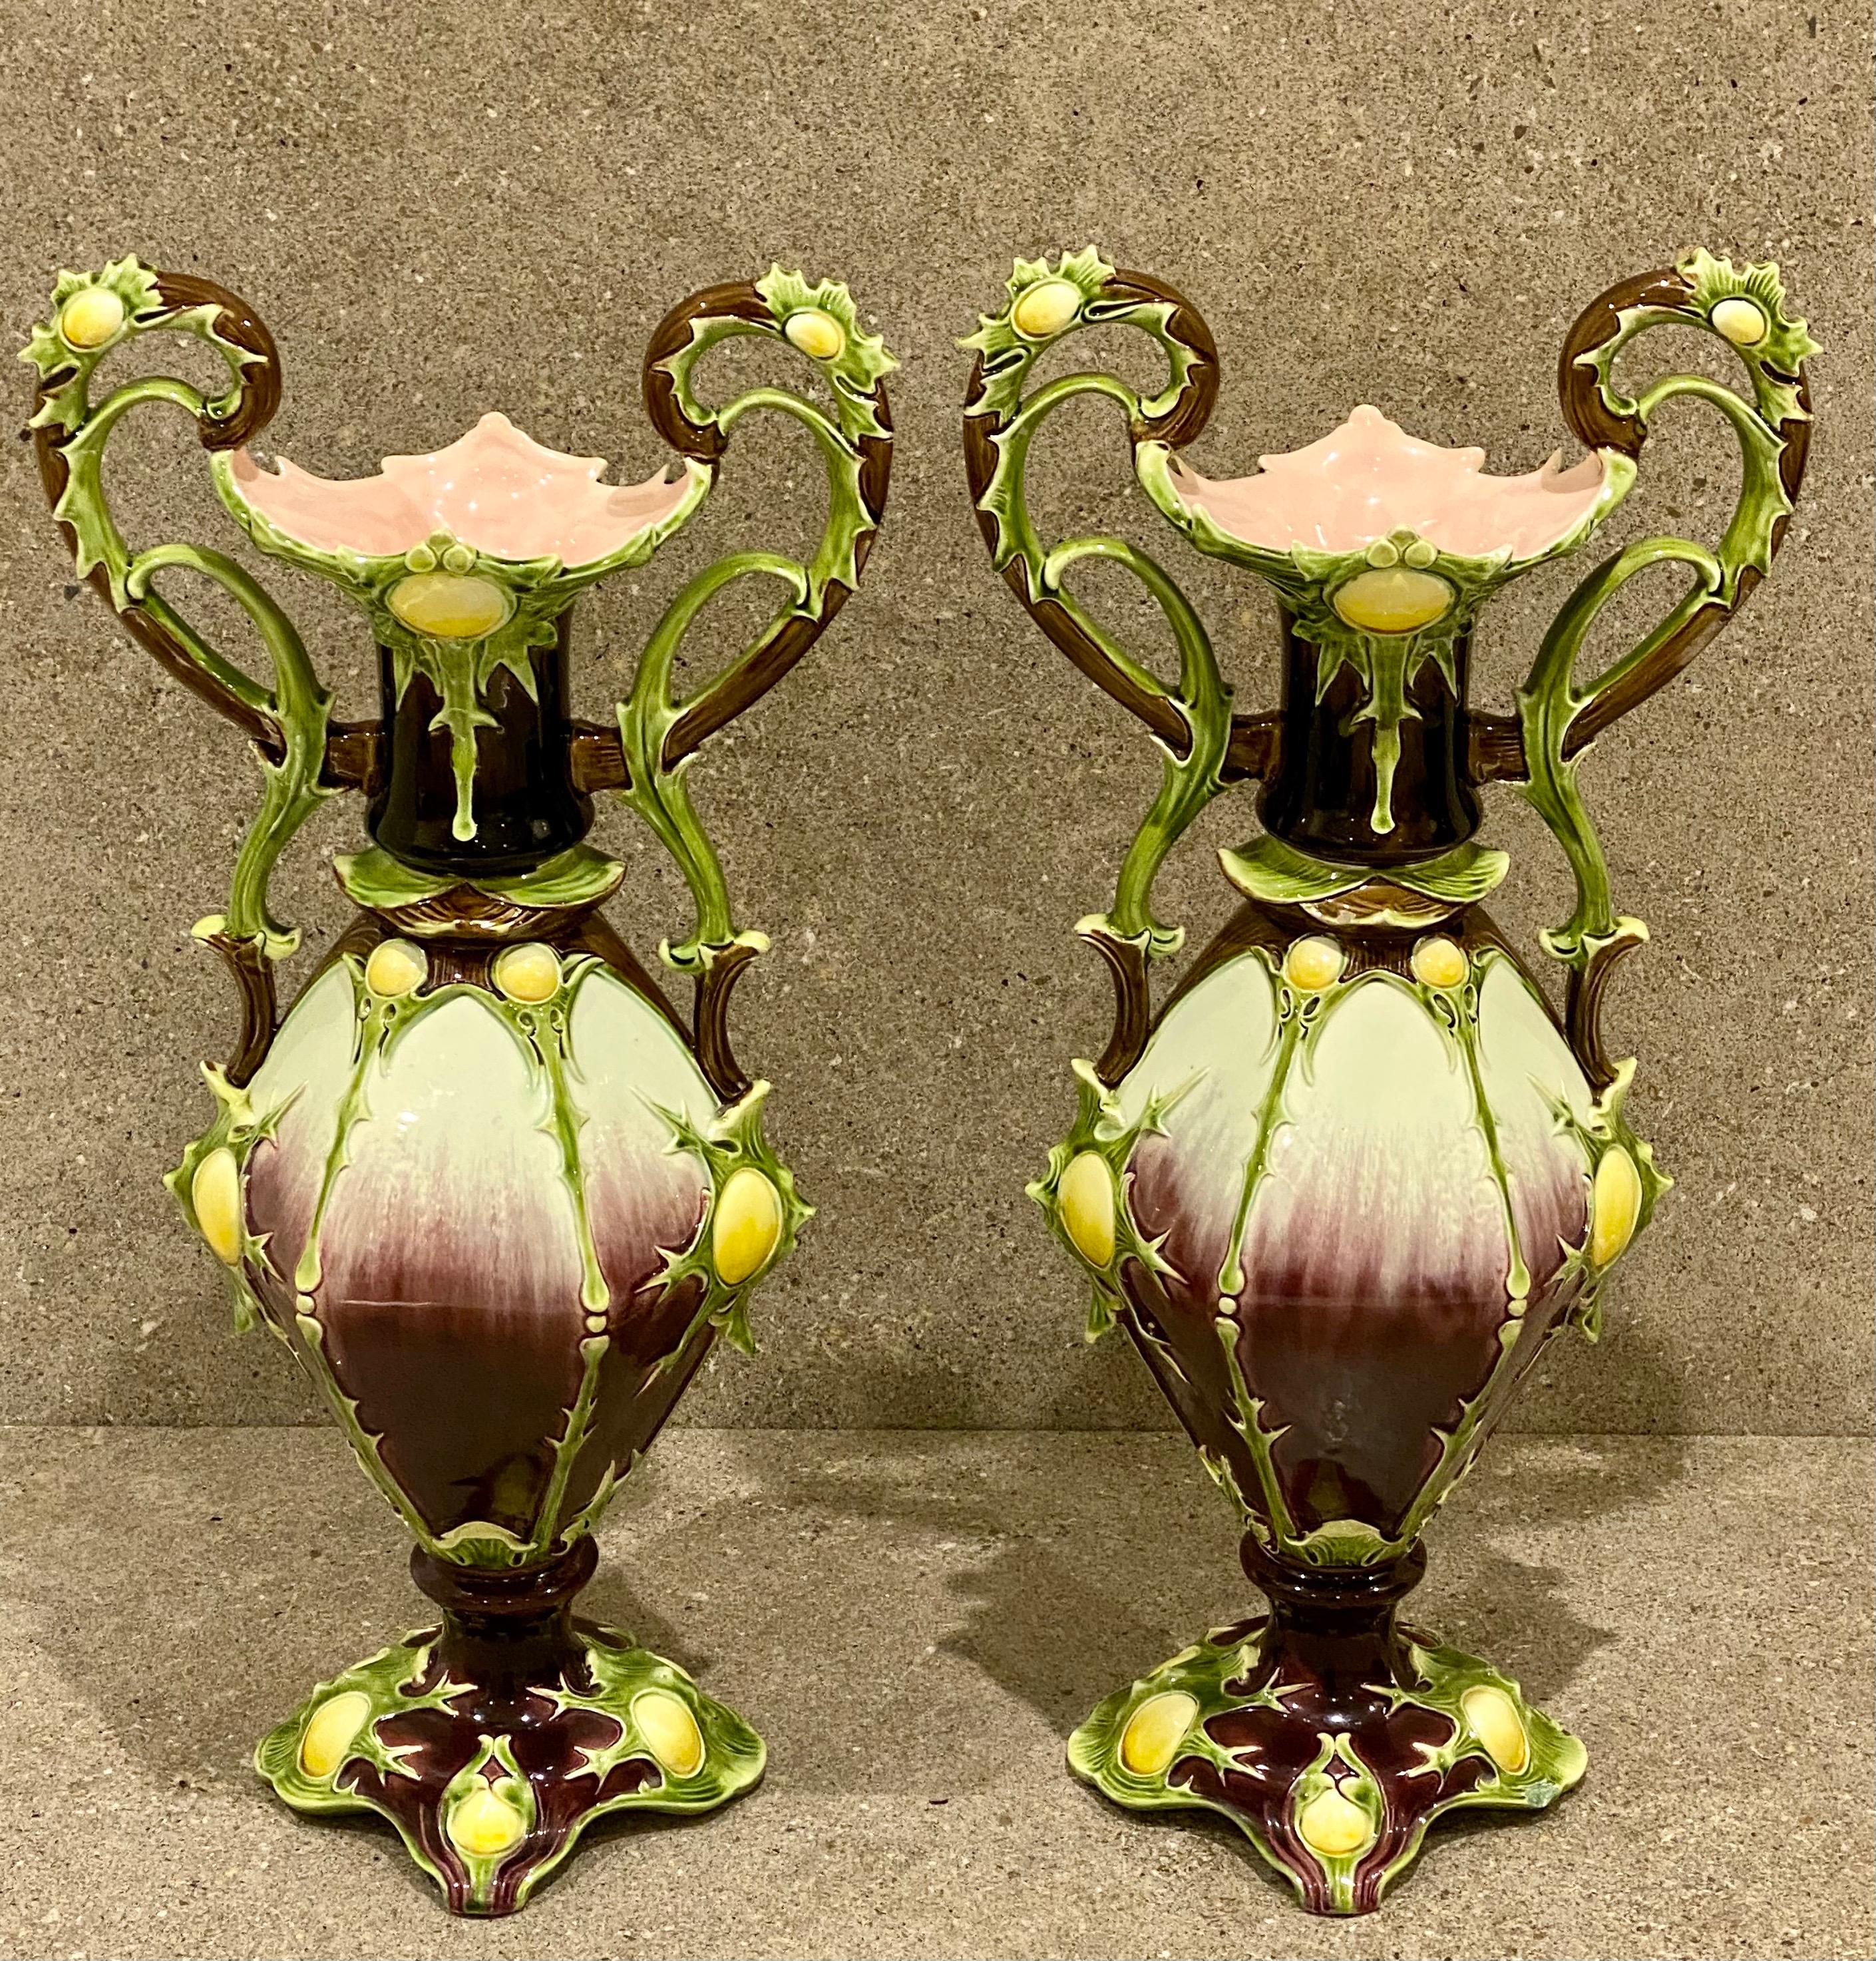 Beeindruckendes Paar Majolika-Vasen von Julius Dressler, um 1885. Diese großen Vasen im Amphoren-Stil bestechen durch ihr ungewöhnliches Design und die herrlichen Farben. Maße: 20